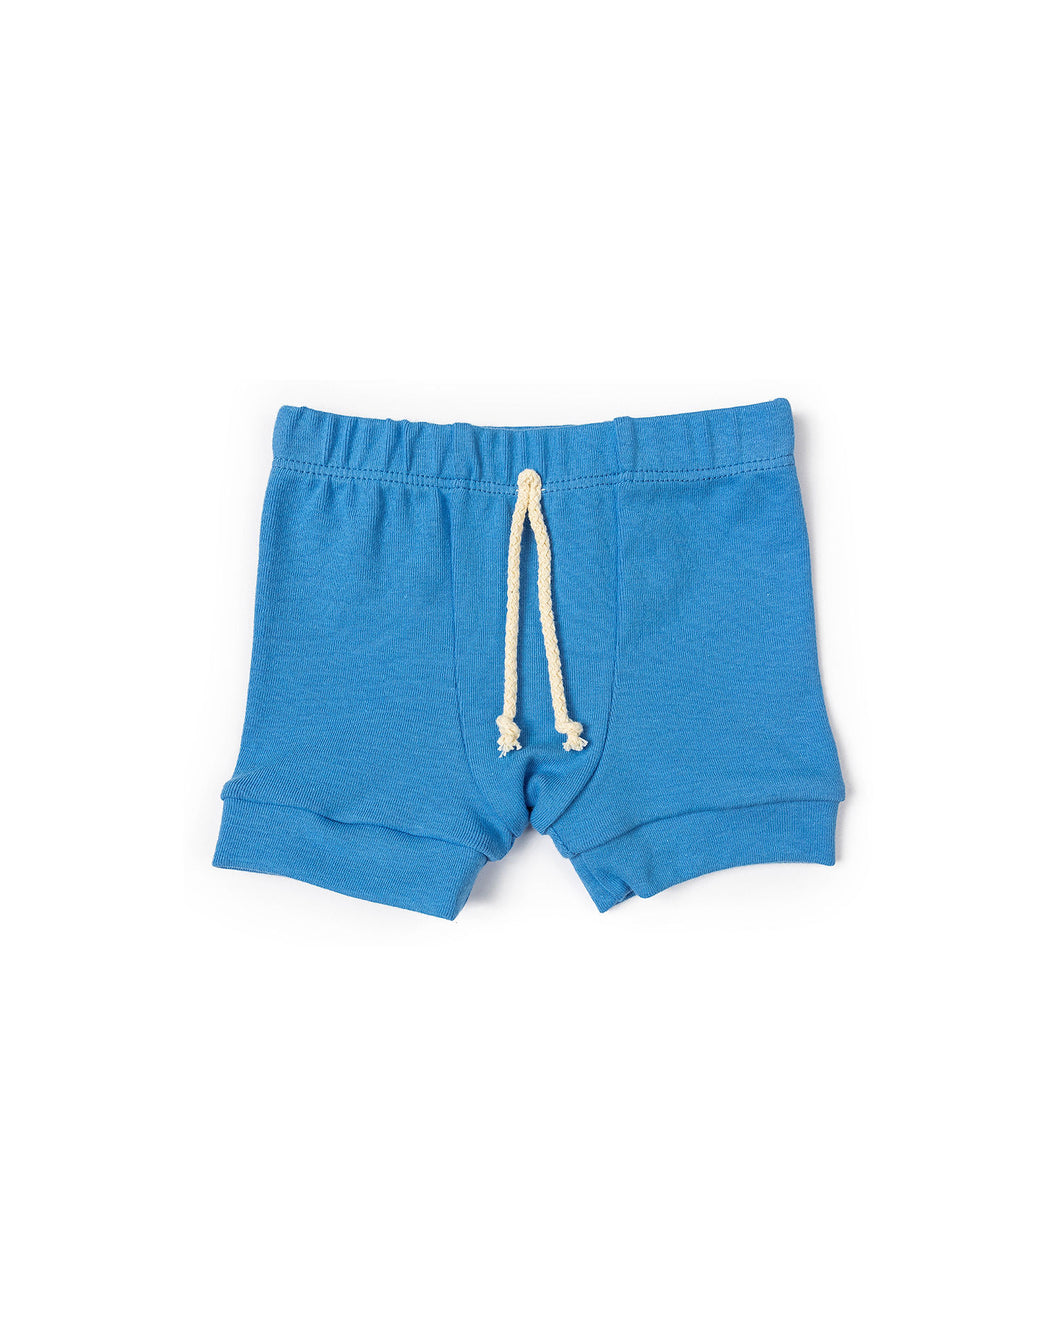 rib knit shorts - marine blue